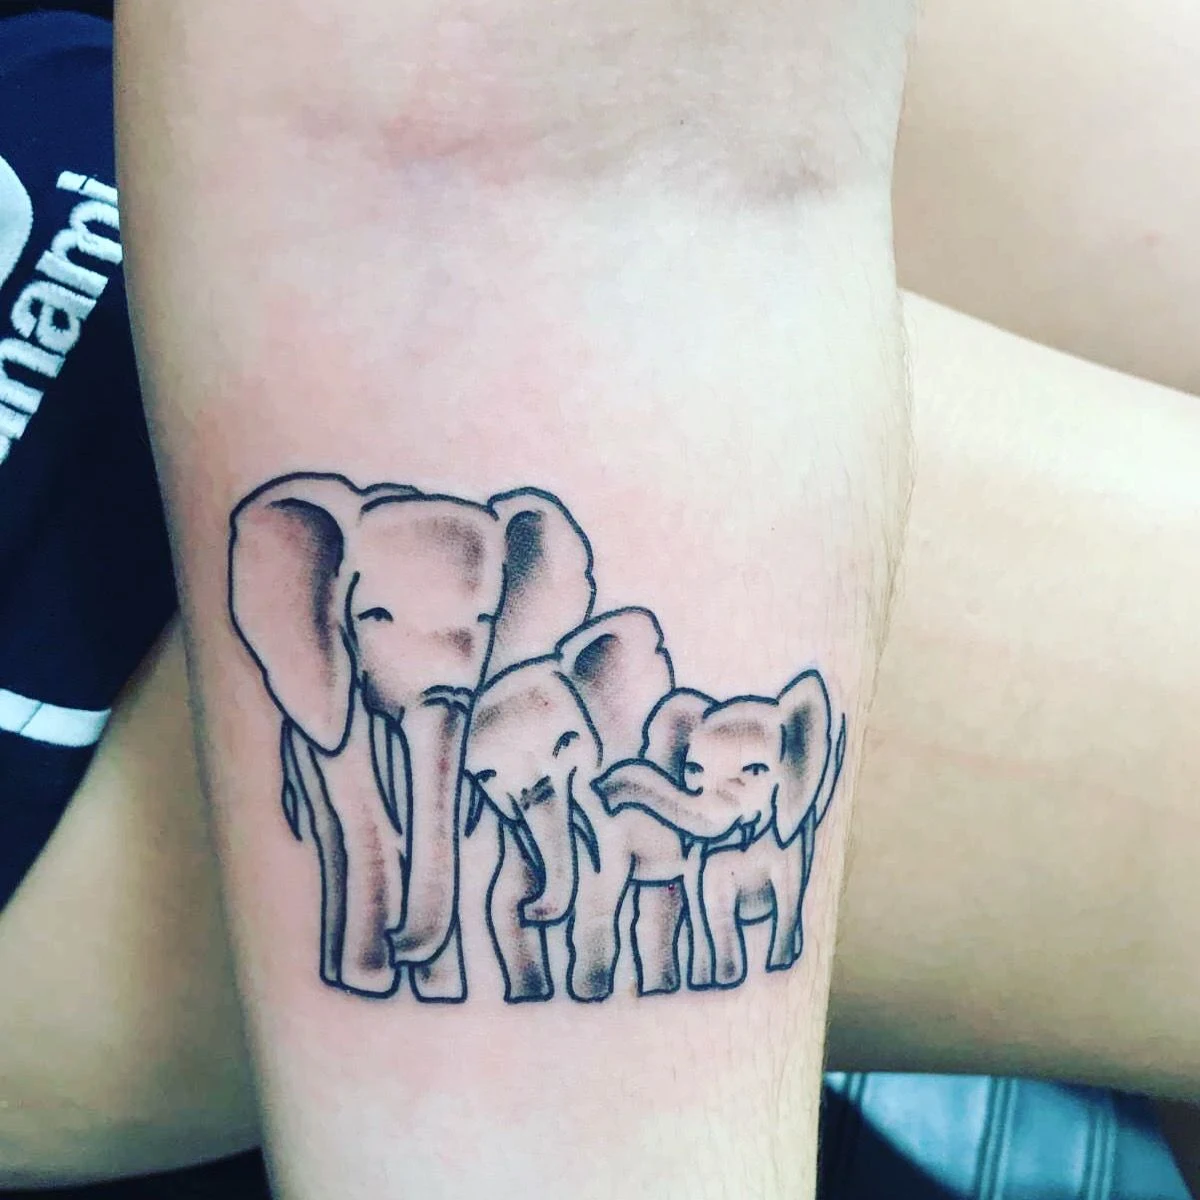 Imagen de tatuaje de elefante